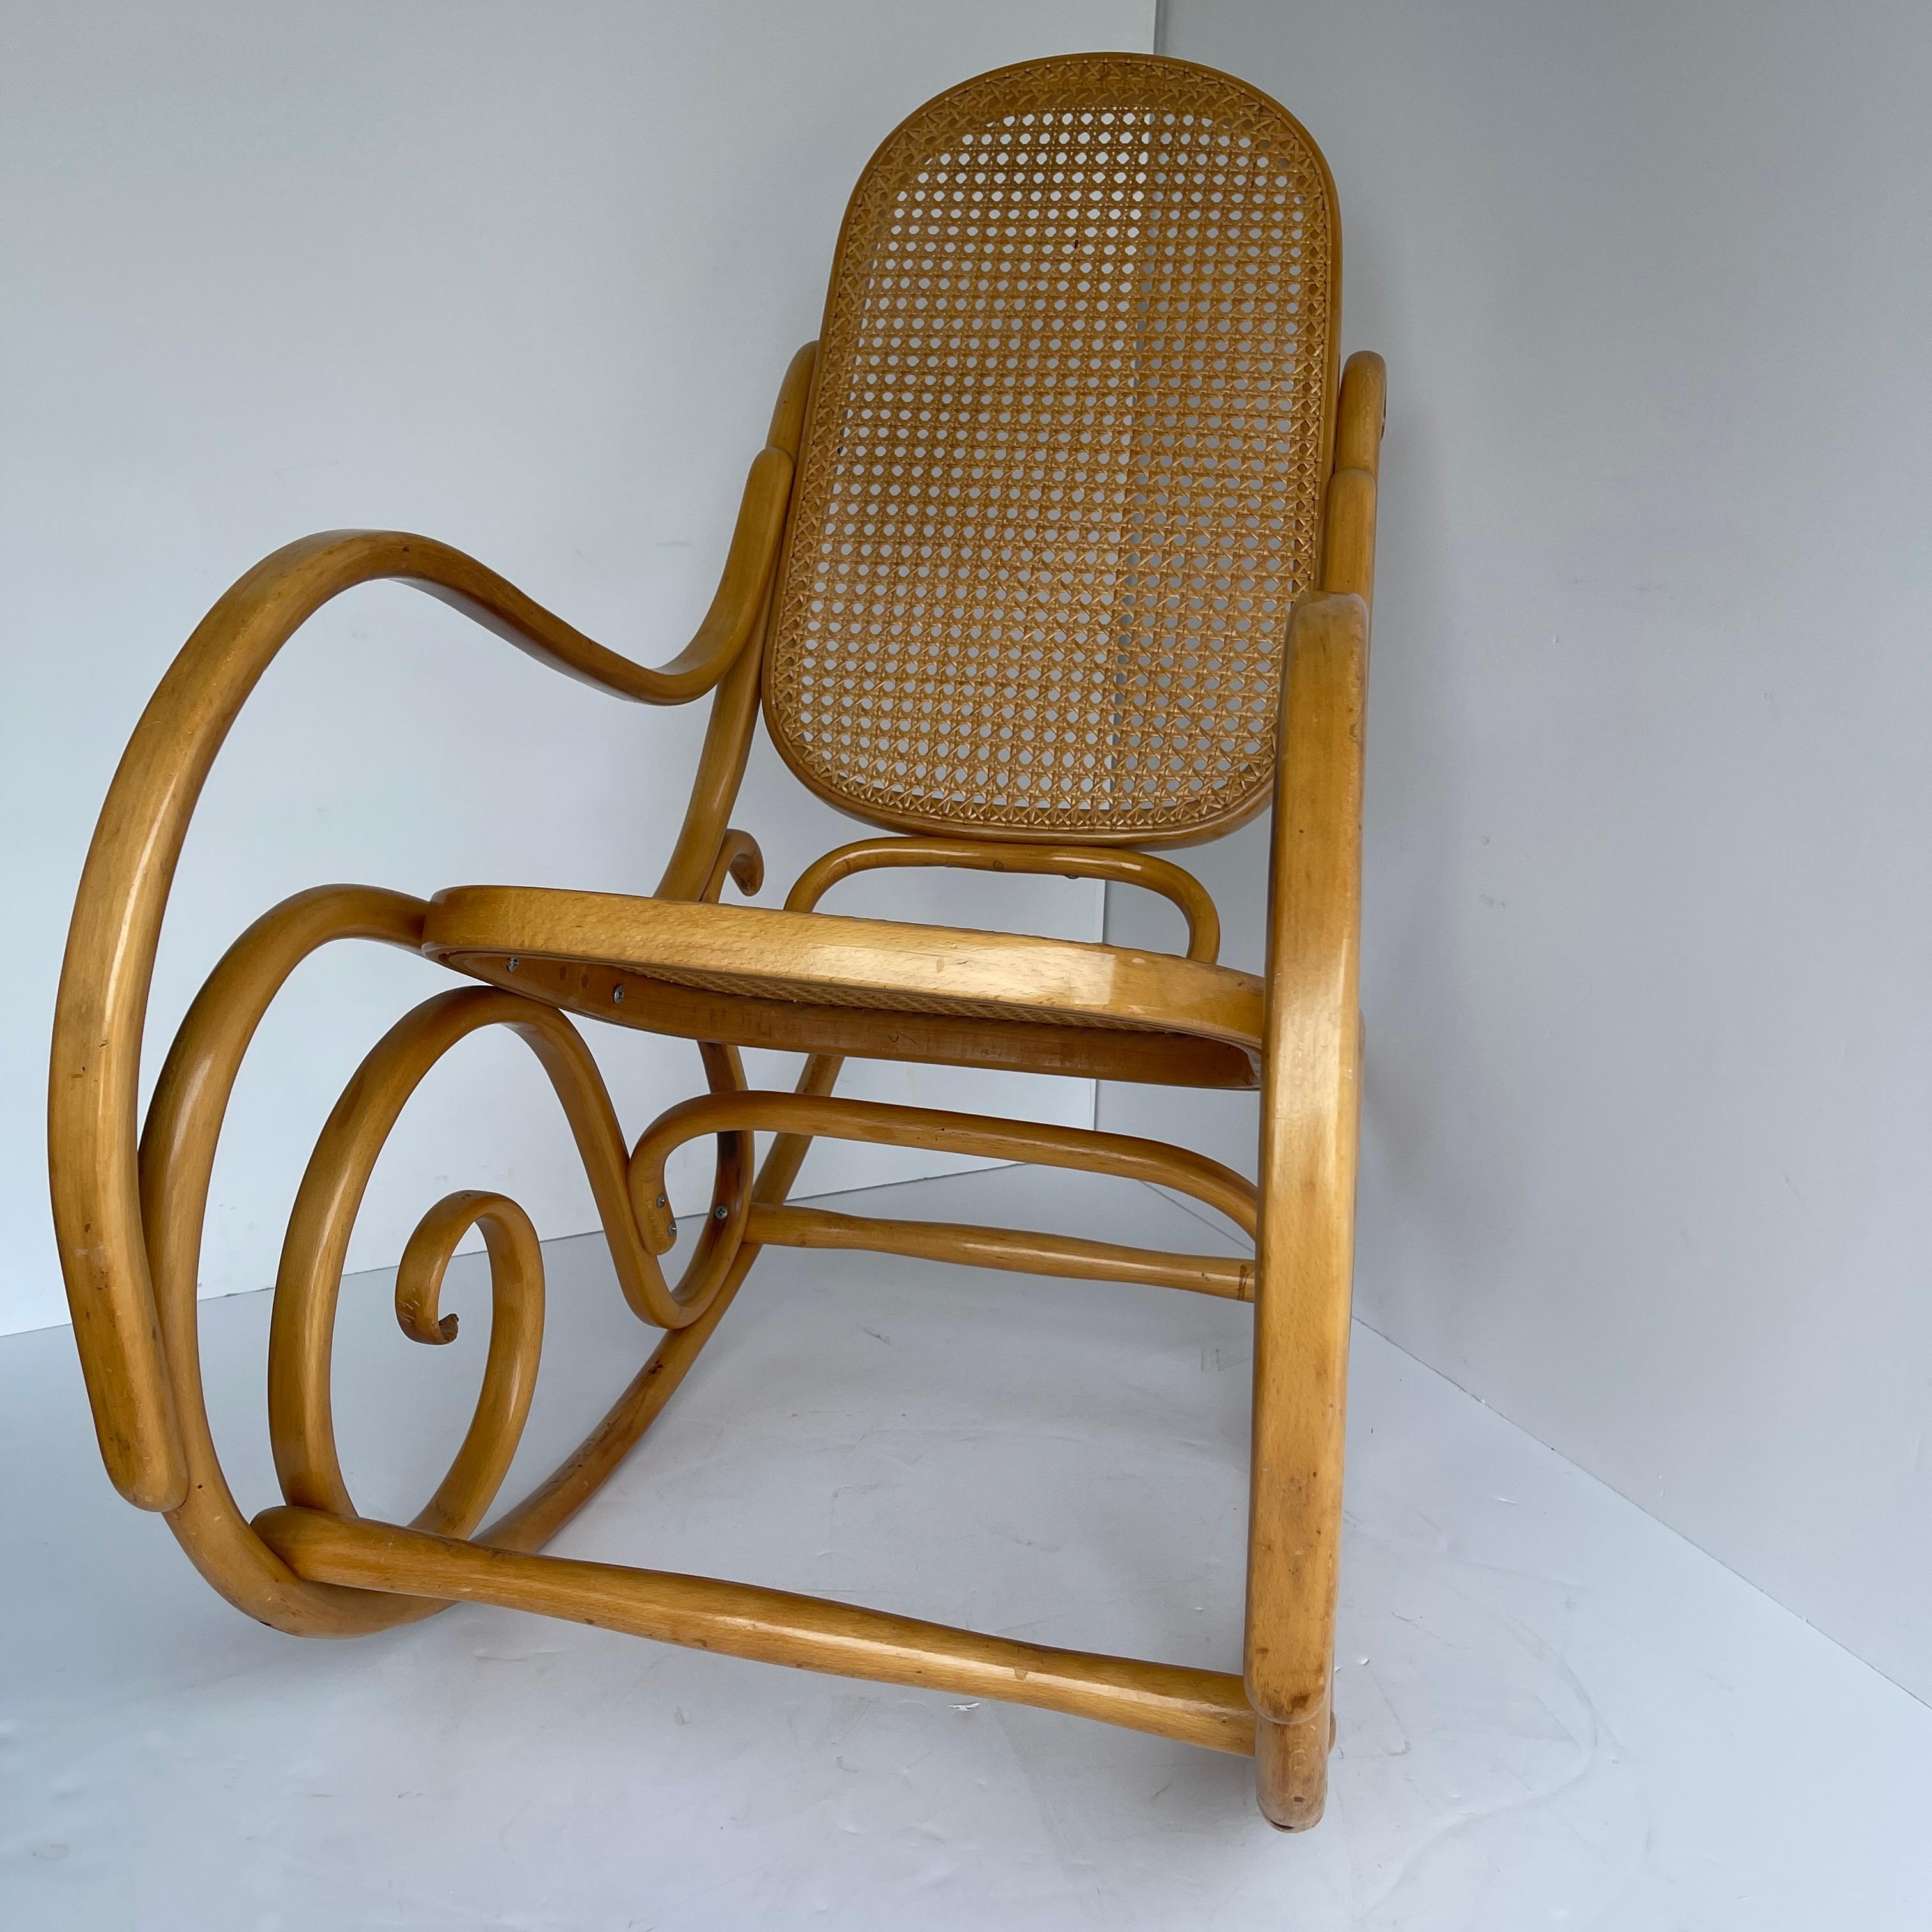 Hand-Crafted Vintage Thonet Schaukelstuhl Rocking Chair, Mid-Century Modern